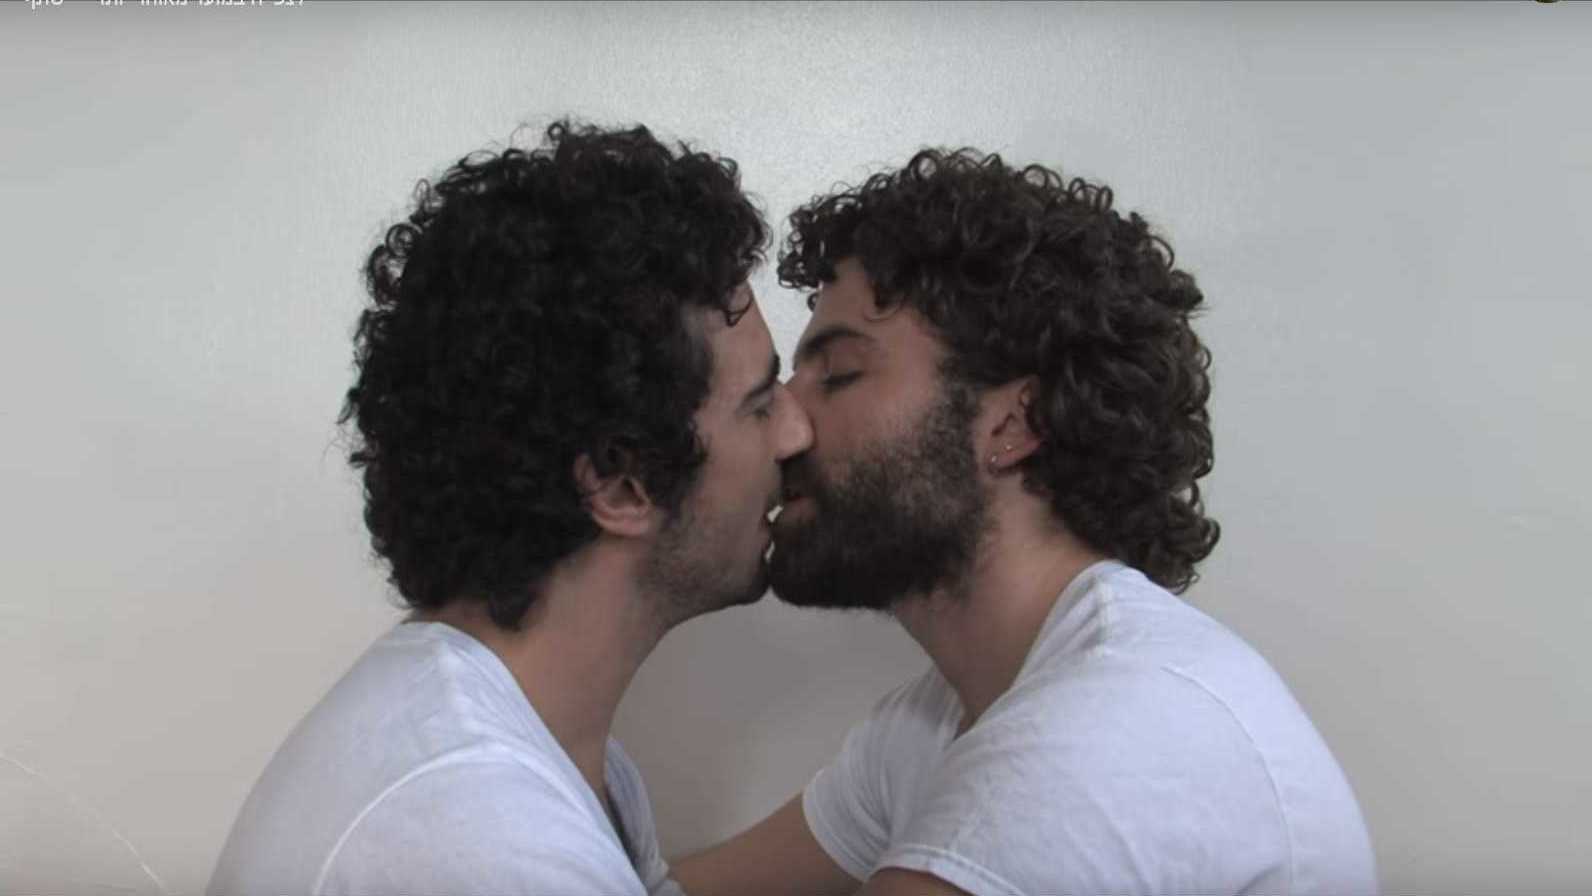 וידאו ארט של האמן עידן ביטון שאורכו 1:24:24 וכולו נשיקה בין שני גברים